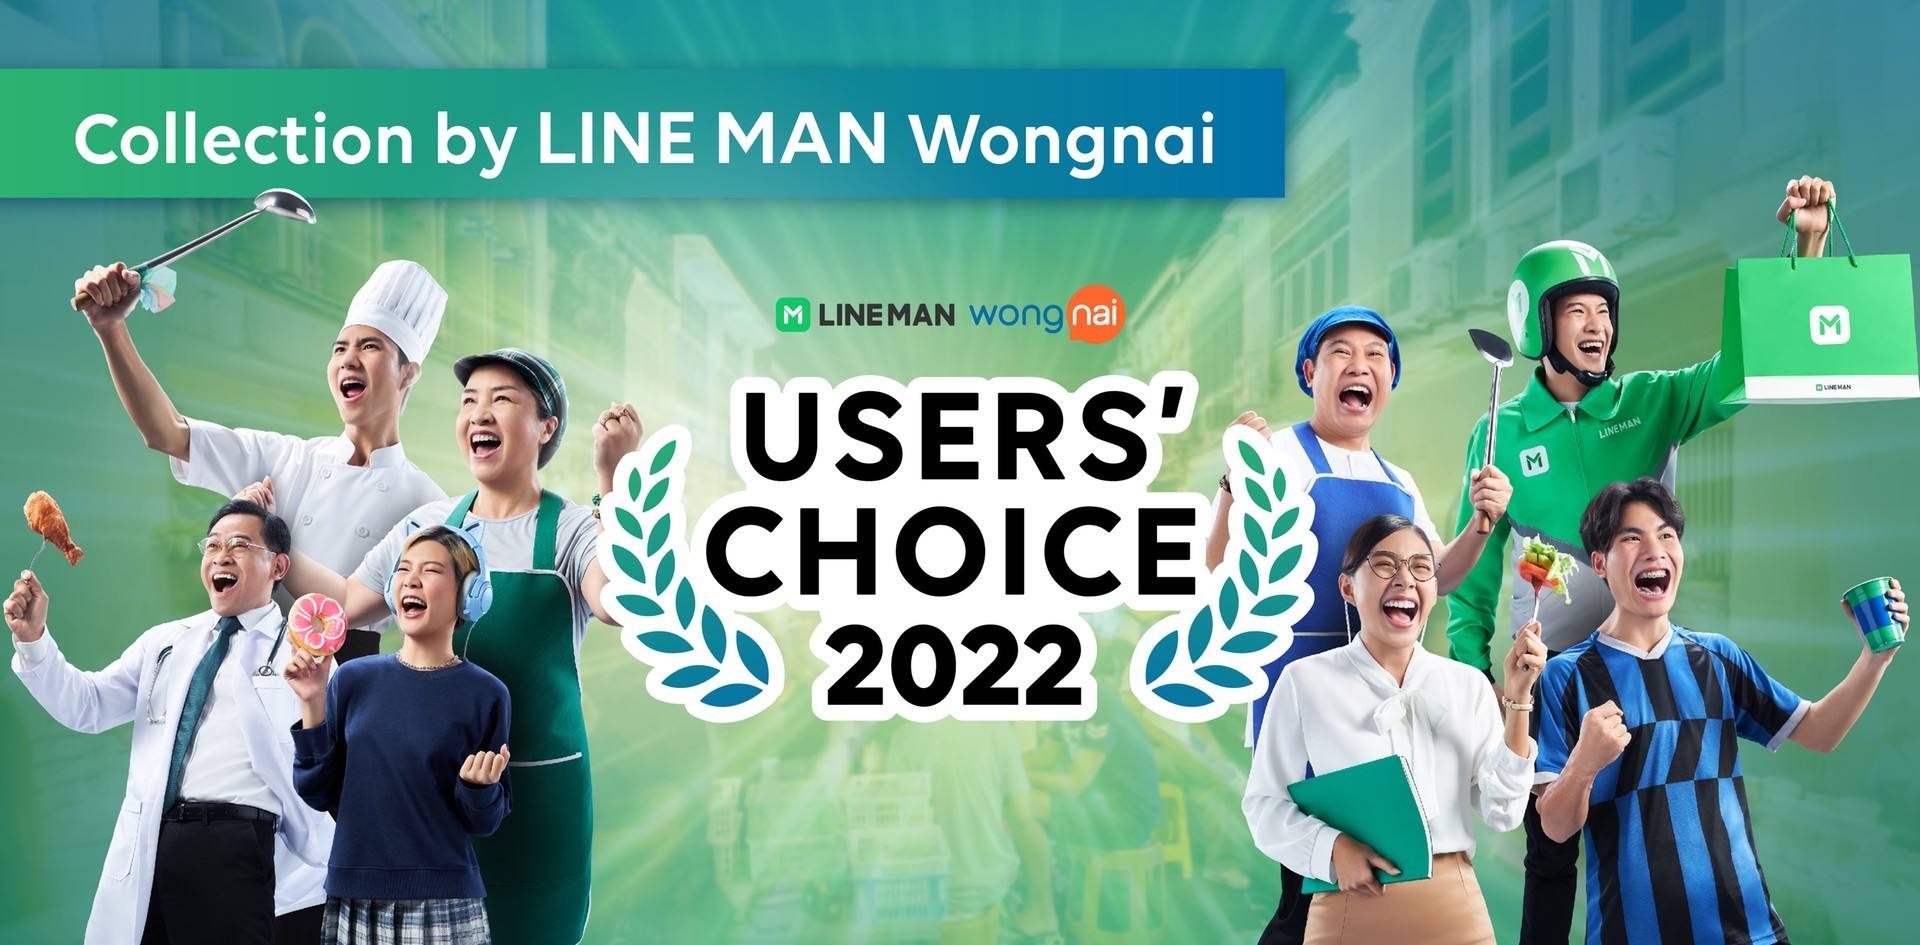 กินชนะ! คัดแล้วทั่วไทย ร้านอาหารรางวัล LINE MAN Wongnai Users’ Choice 2022